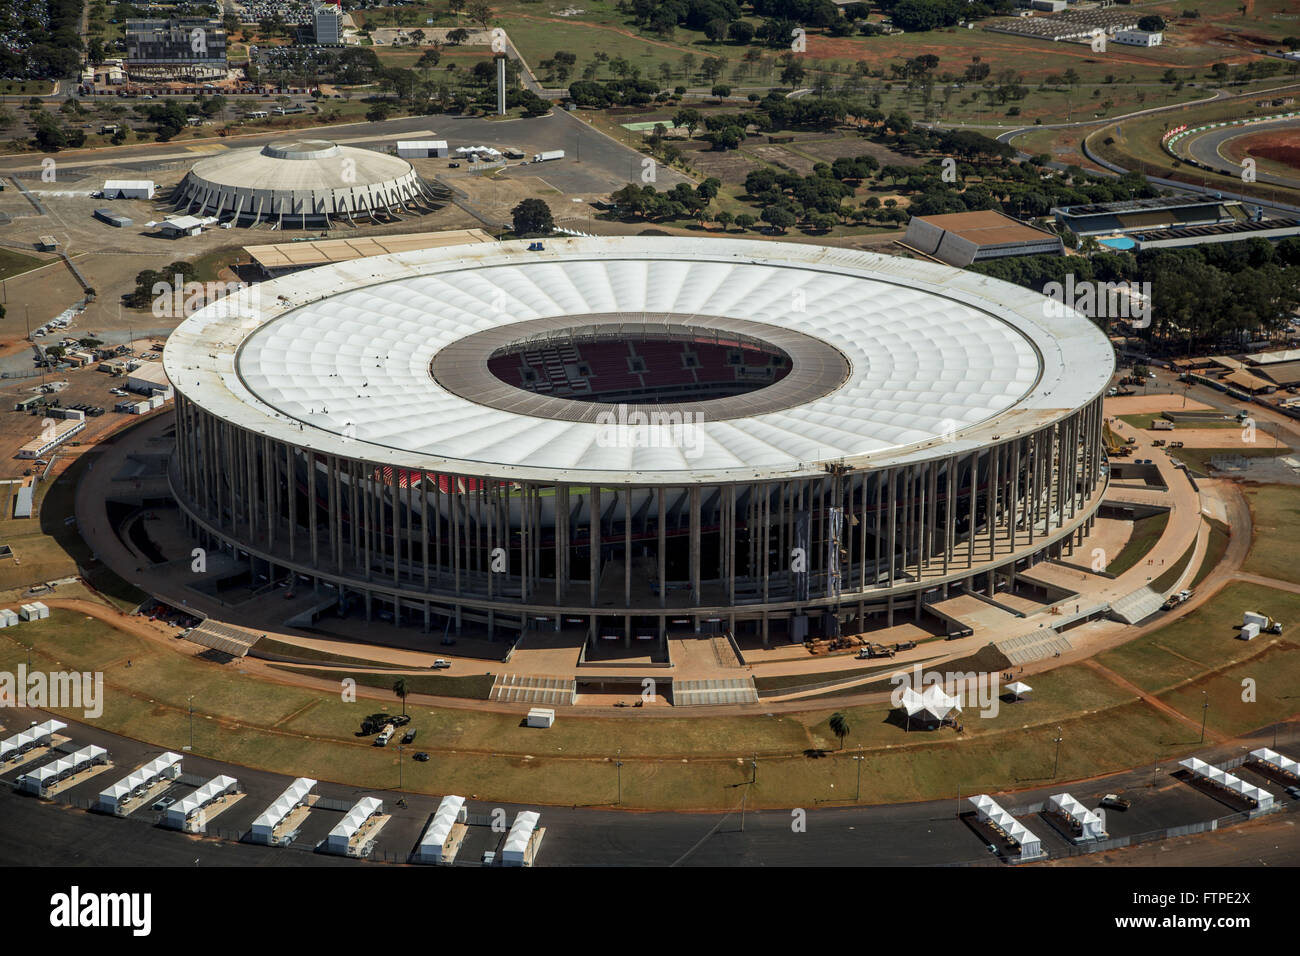 Vue aérienne de l'Estadio Mane Garrincha et Nilson Nelson gauche Gymnase Banque D'Images